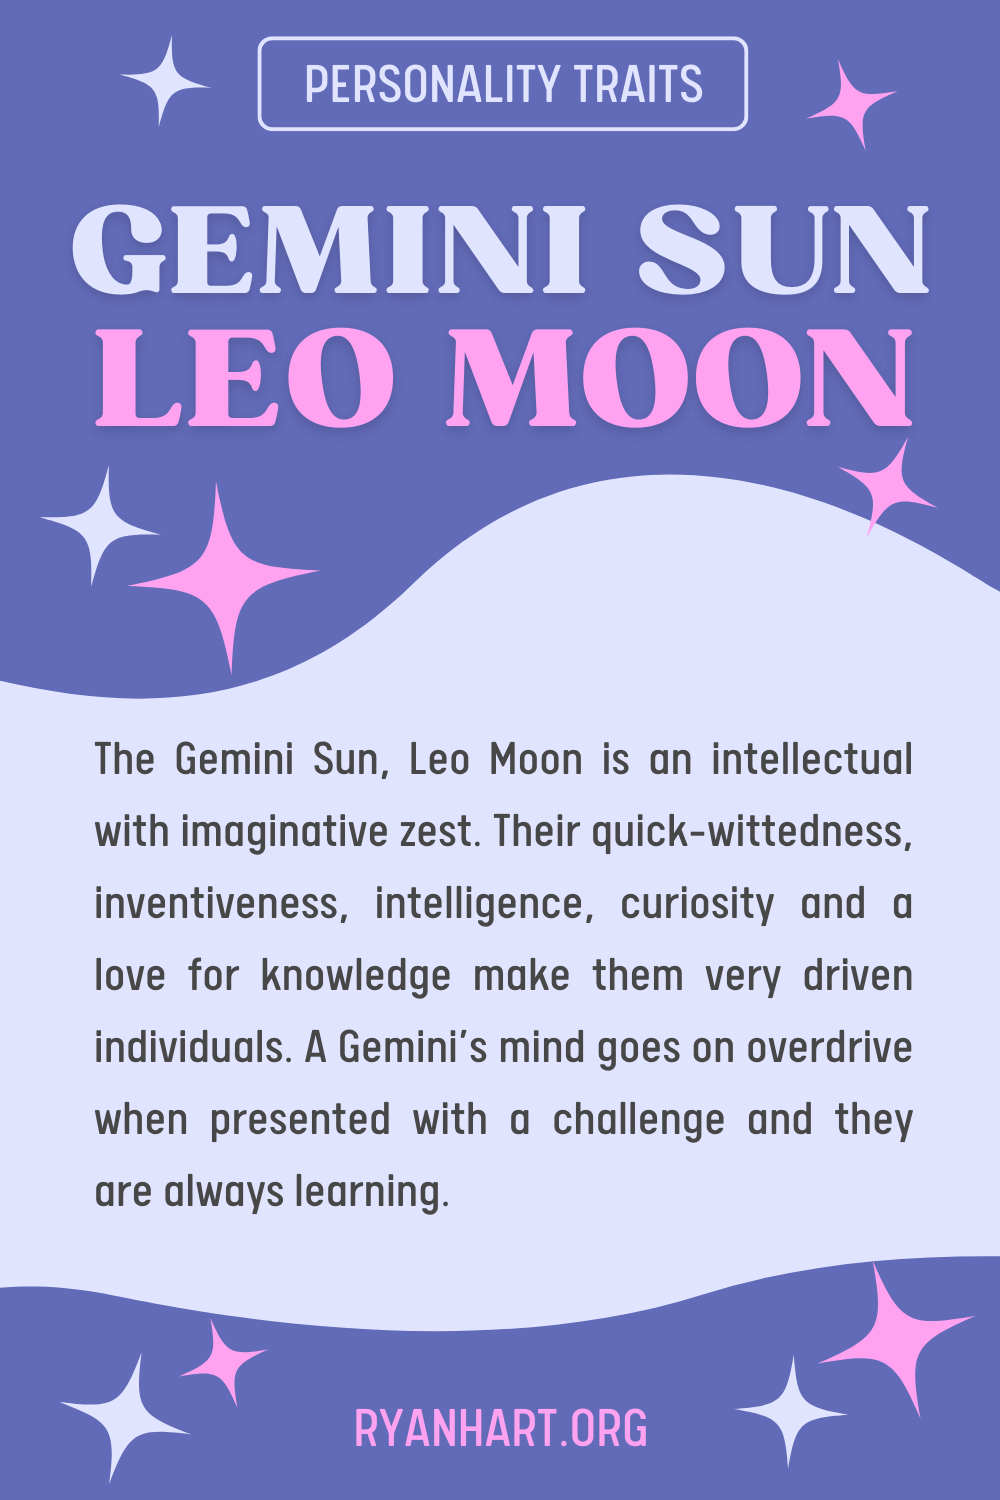 Gemini Sun Leo Moon Description